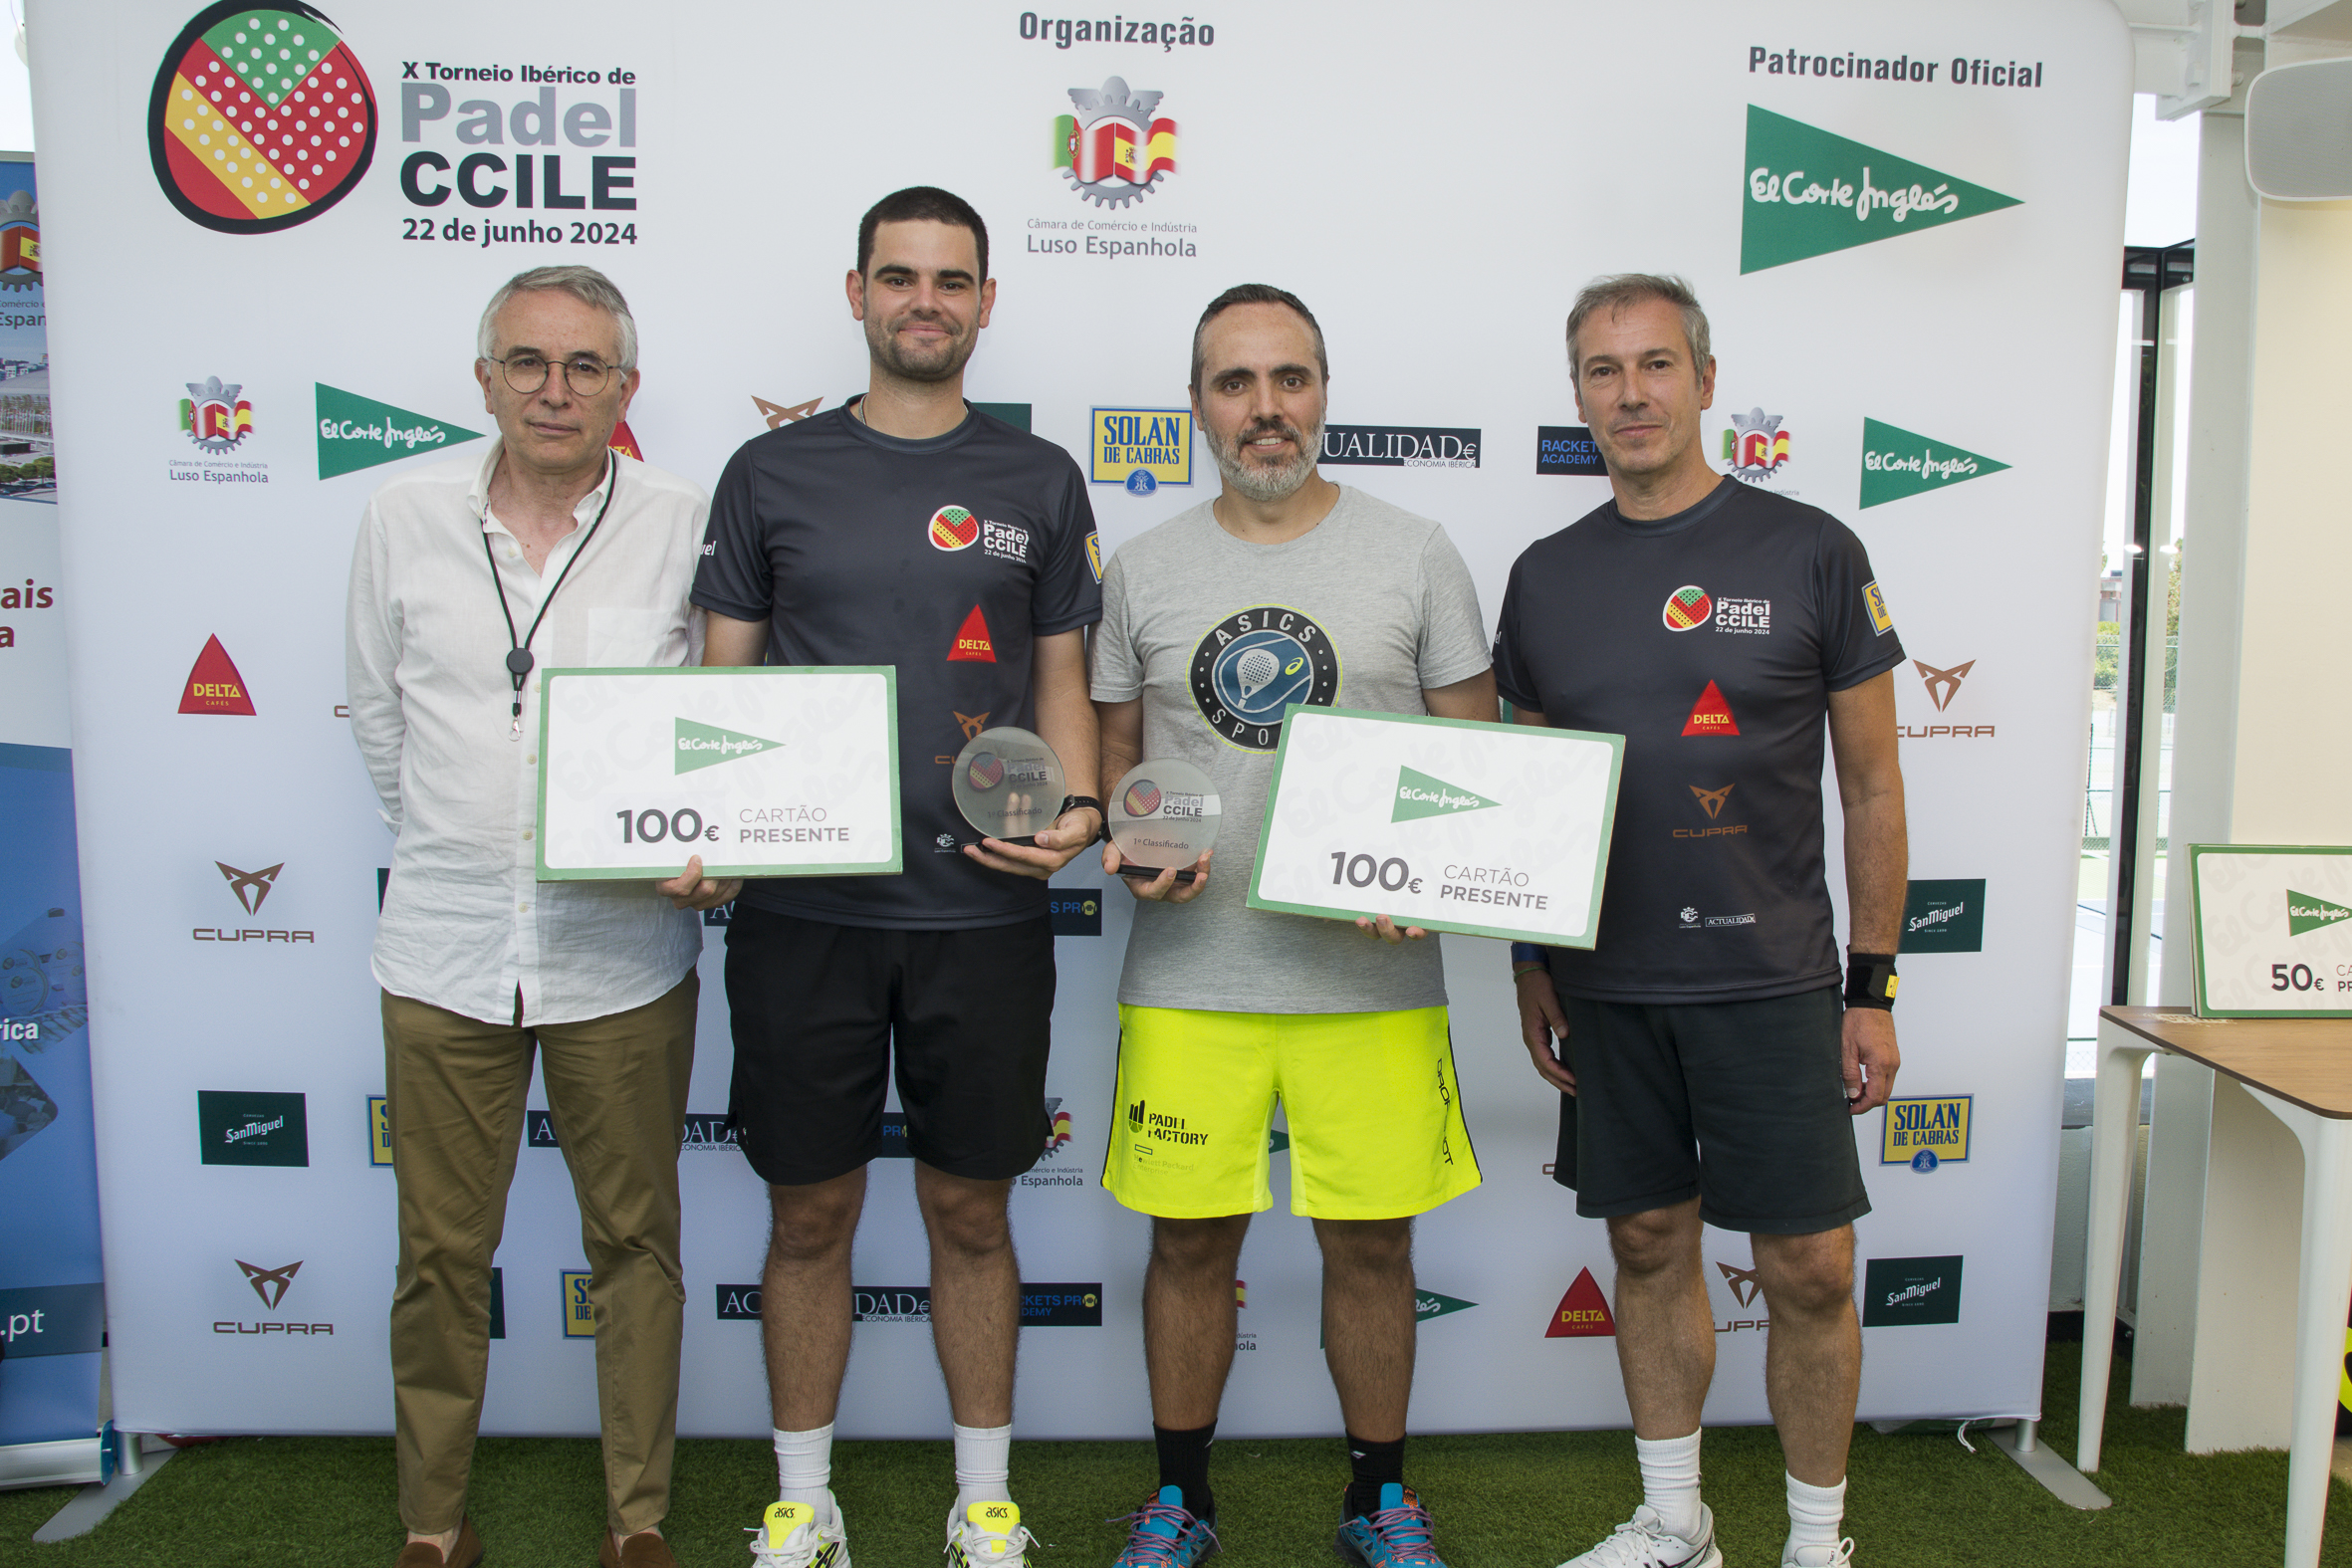 Vencedores do IX Torneio Ibérico de Padel, Pedro Mendonça dos Santos e Pedro Jorge Correia, da Maxampor